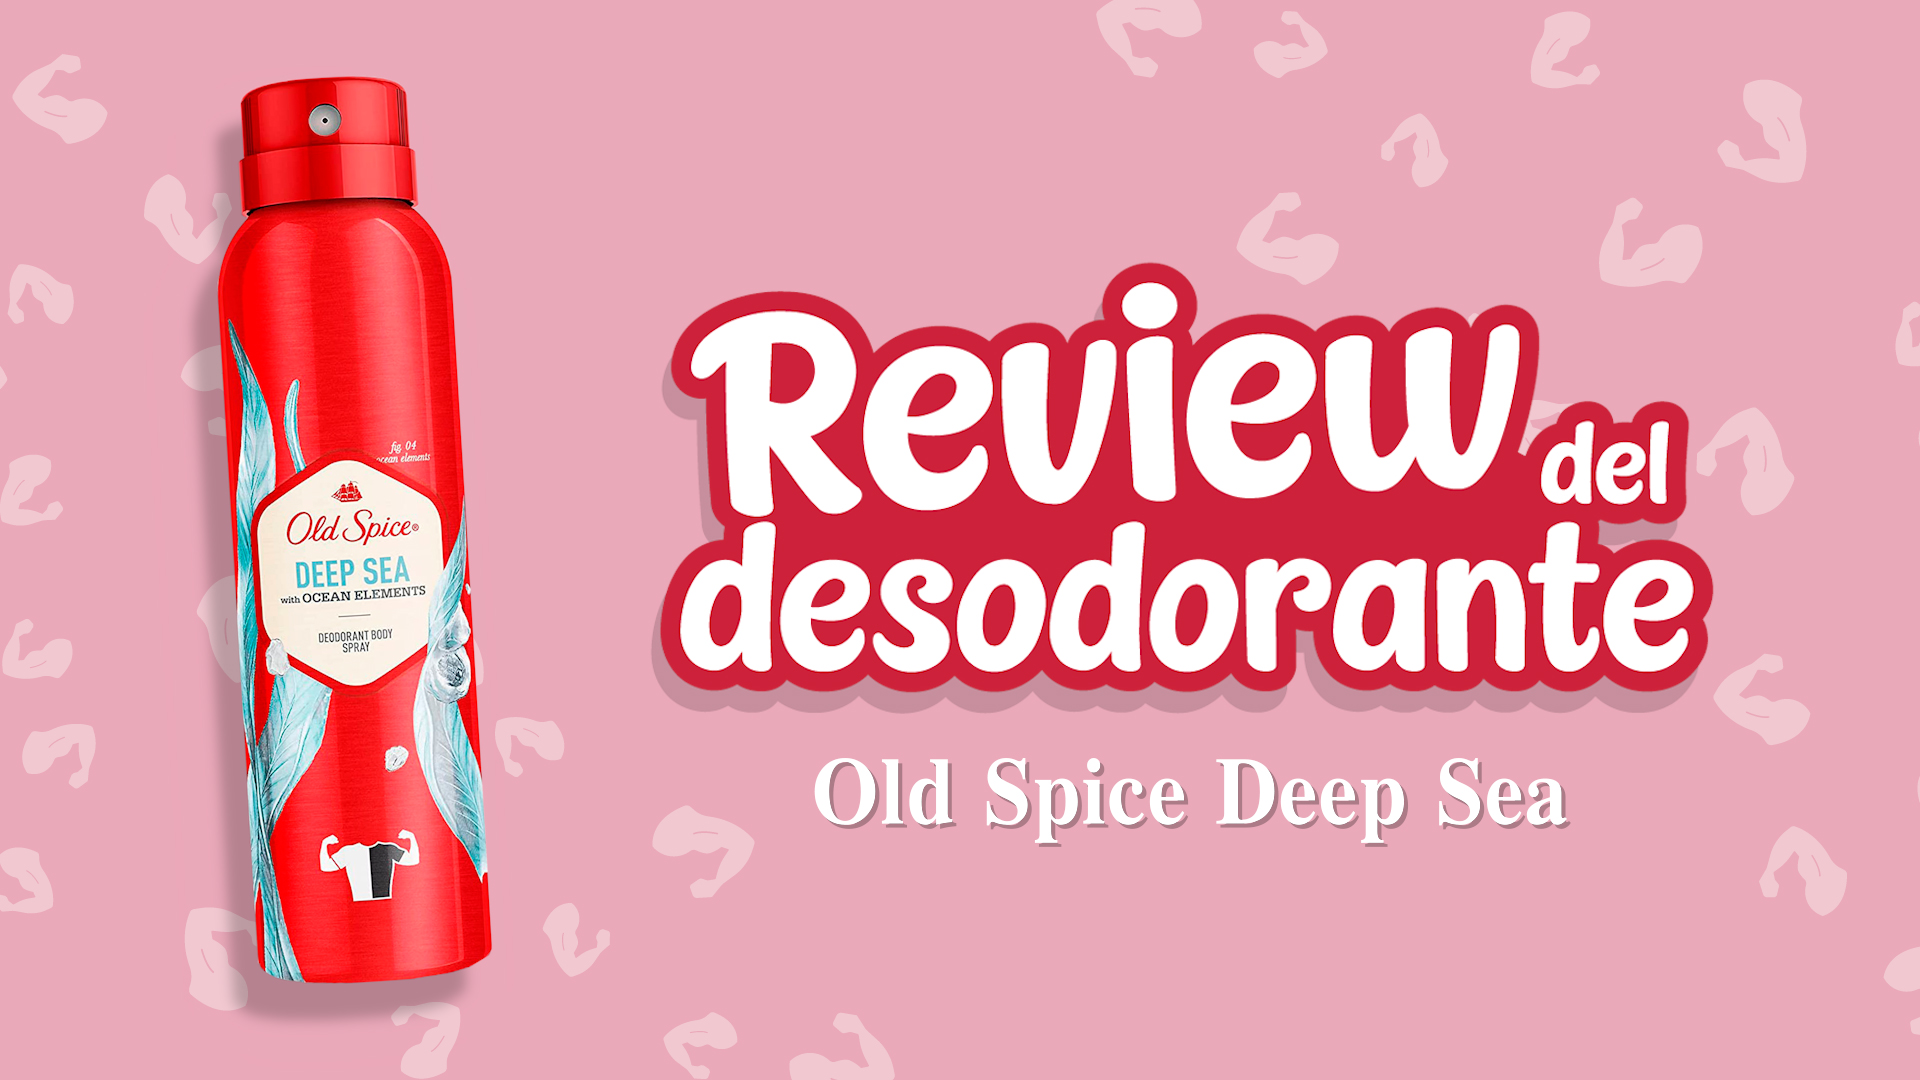 Opiniones del desodorante old spice deep sea - Review del desodorante old spice deep sea